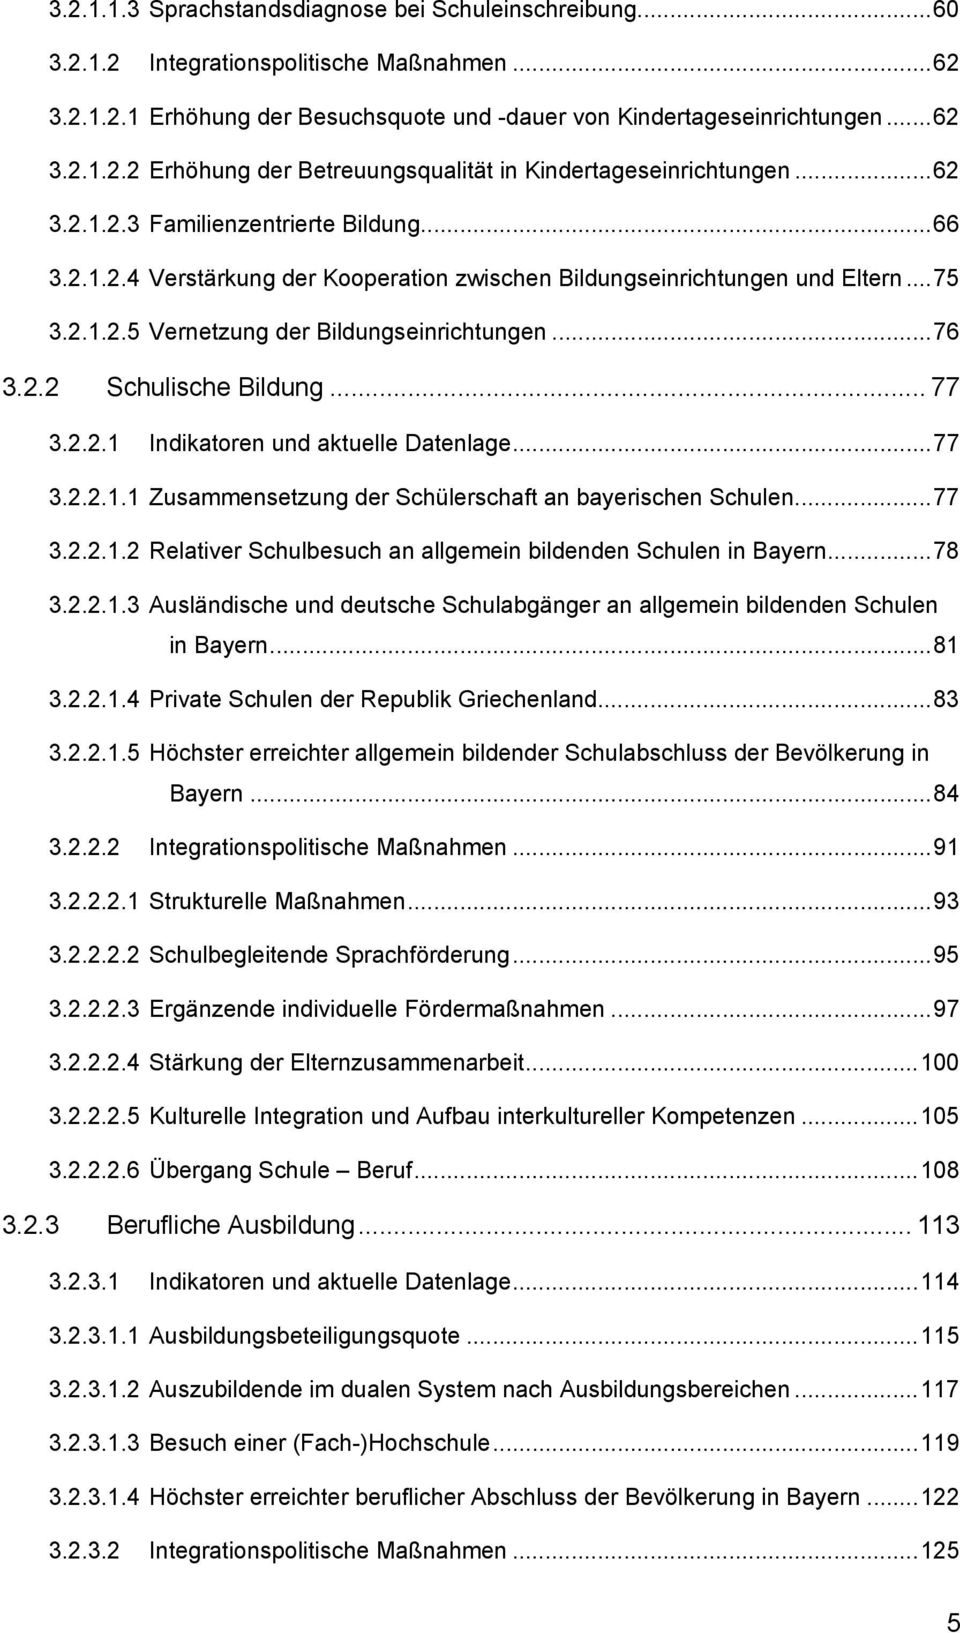 .. 77 3.2.2.1 Indikatoren und aktuelle Datenlage...77 3.2.2.1.1 Zusammensetzung der Schülerschaft an bayerischen Schulen...77 3.2.2.1.2 Relativer Schulbesuch an allgemein bildenden Schulen in Bayern.